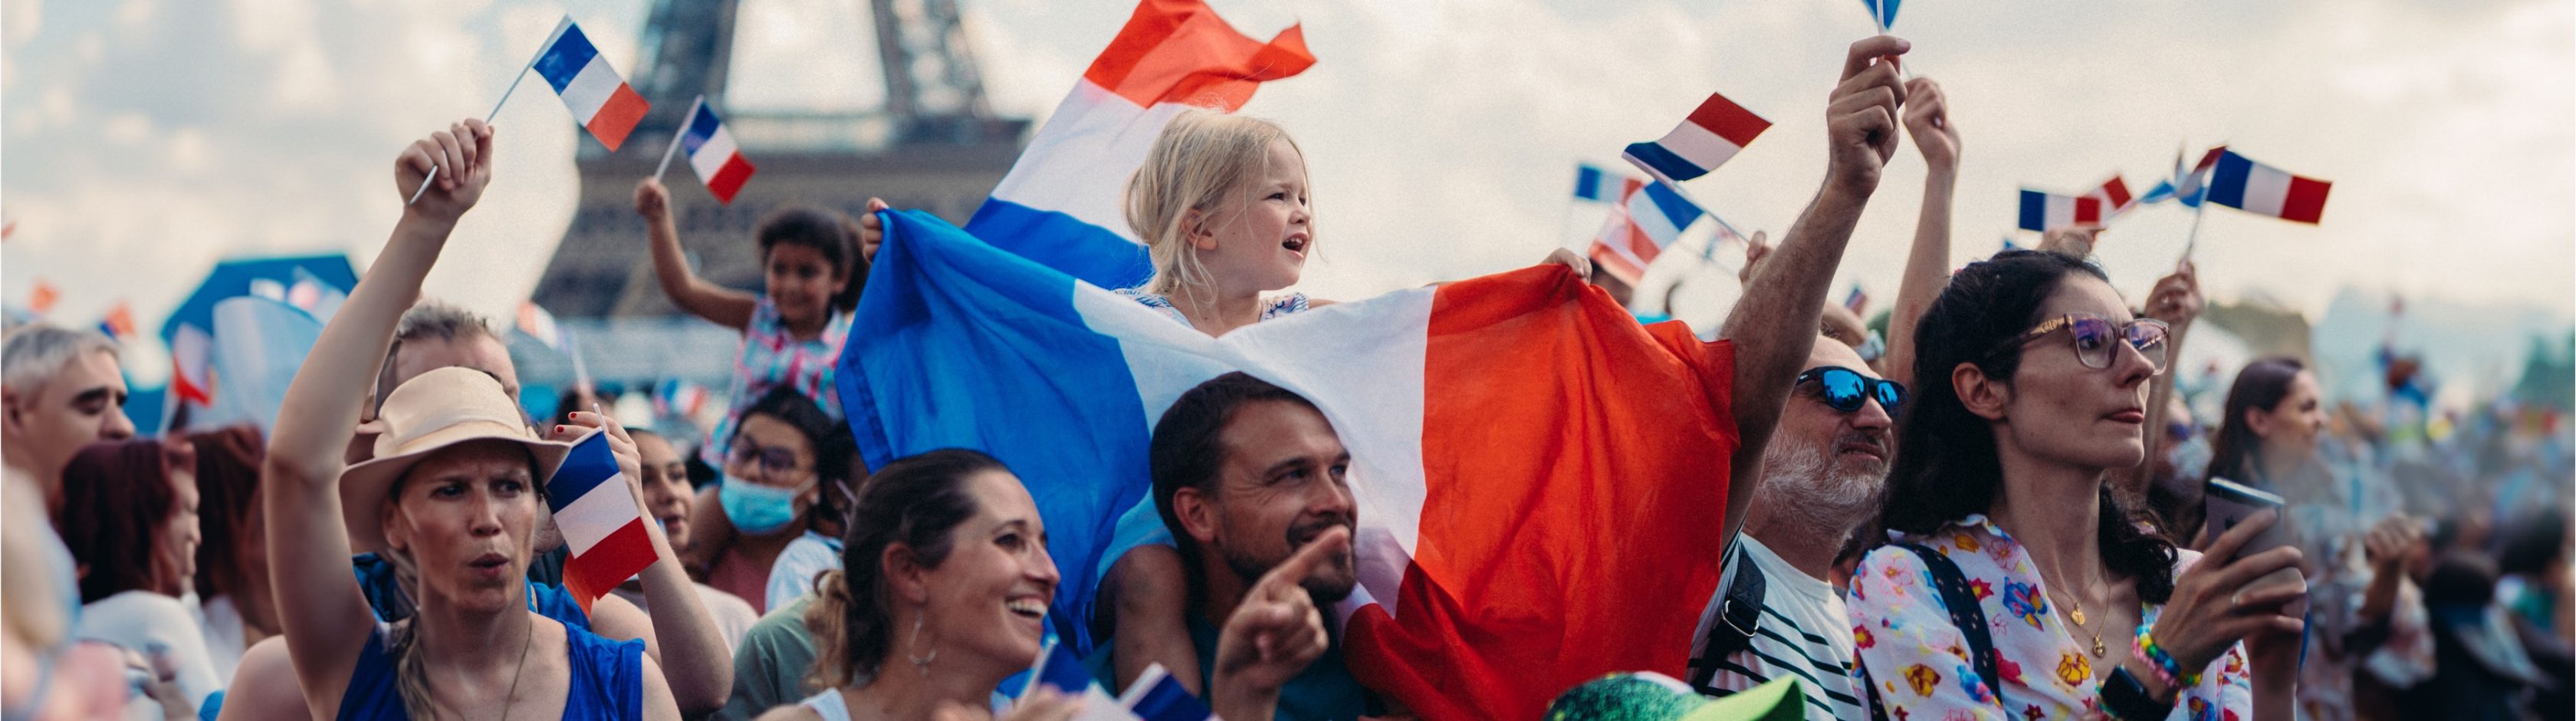 Eine Menge jubelnder Fans, ein Mädchen auf den Schultern ihres Vaters mit vielen wehenden Frankreichfahnen, der Eiffelturm im Hintergrund